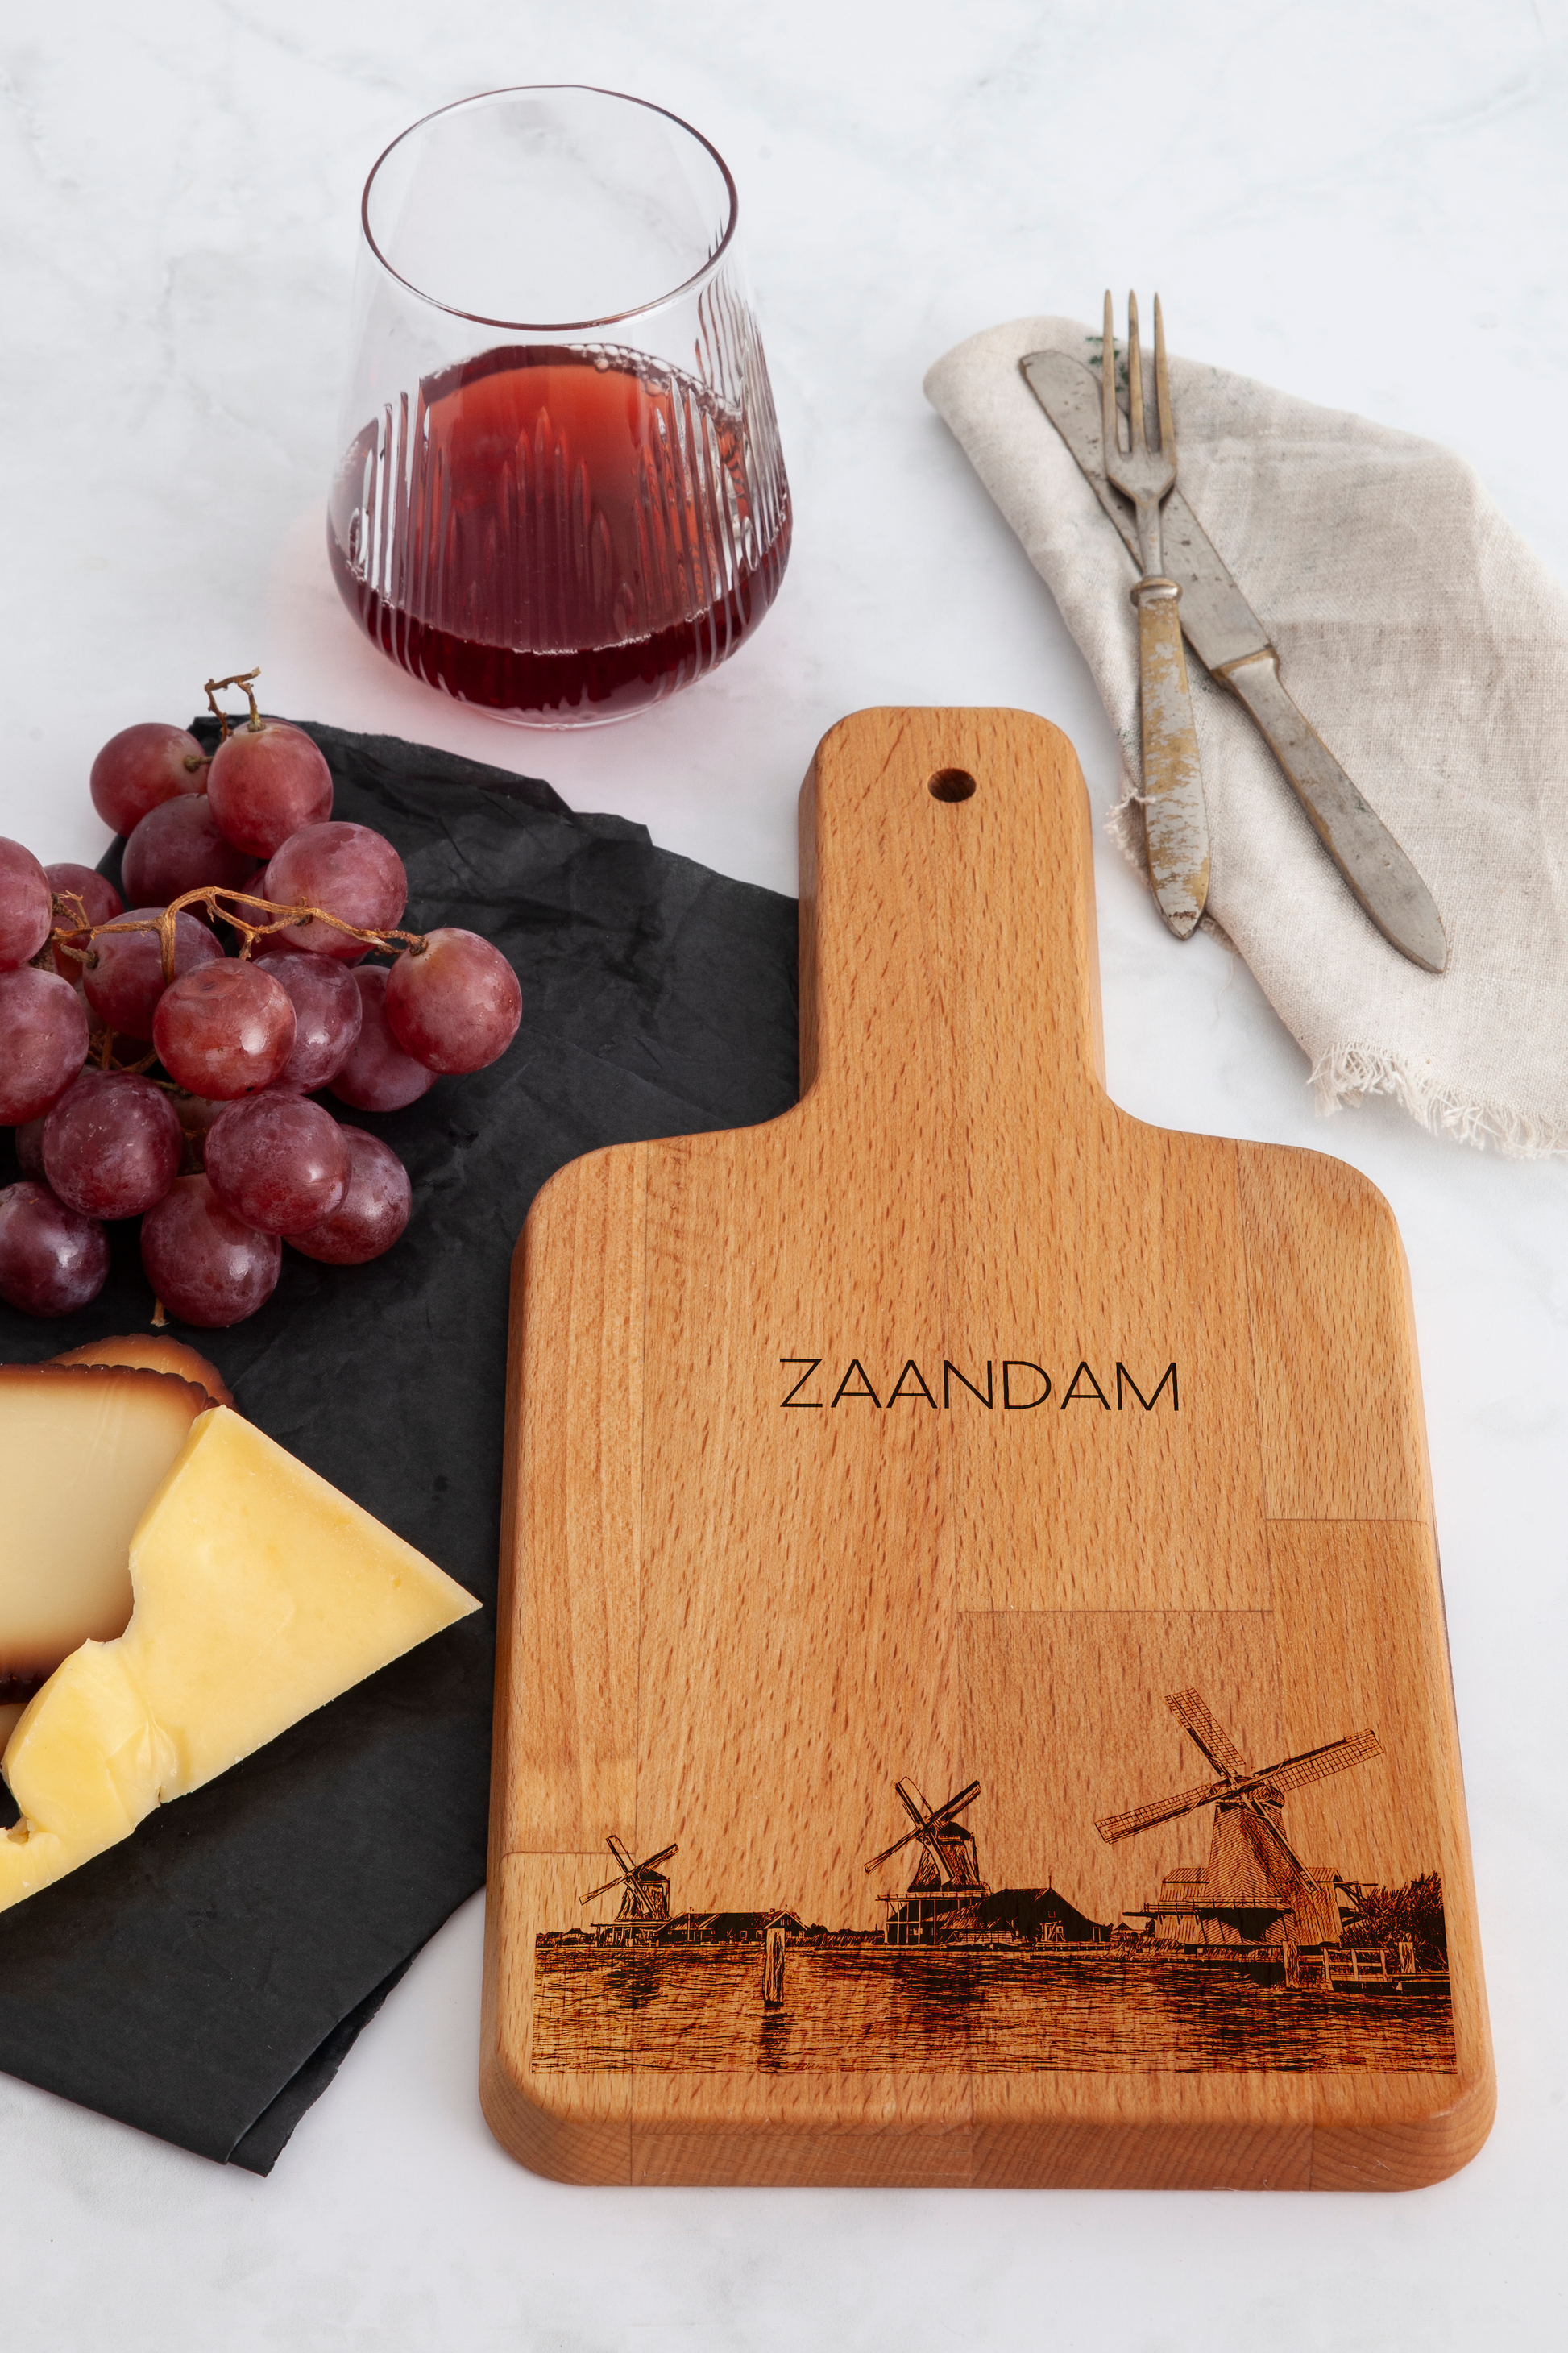 Zaandam, Zaanse Schans, cheese board, on countertop